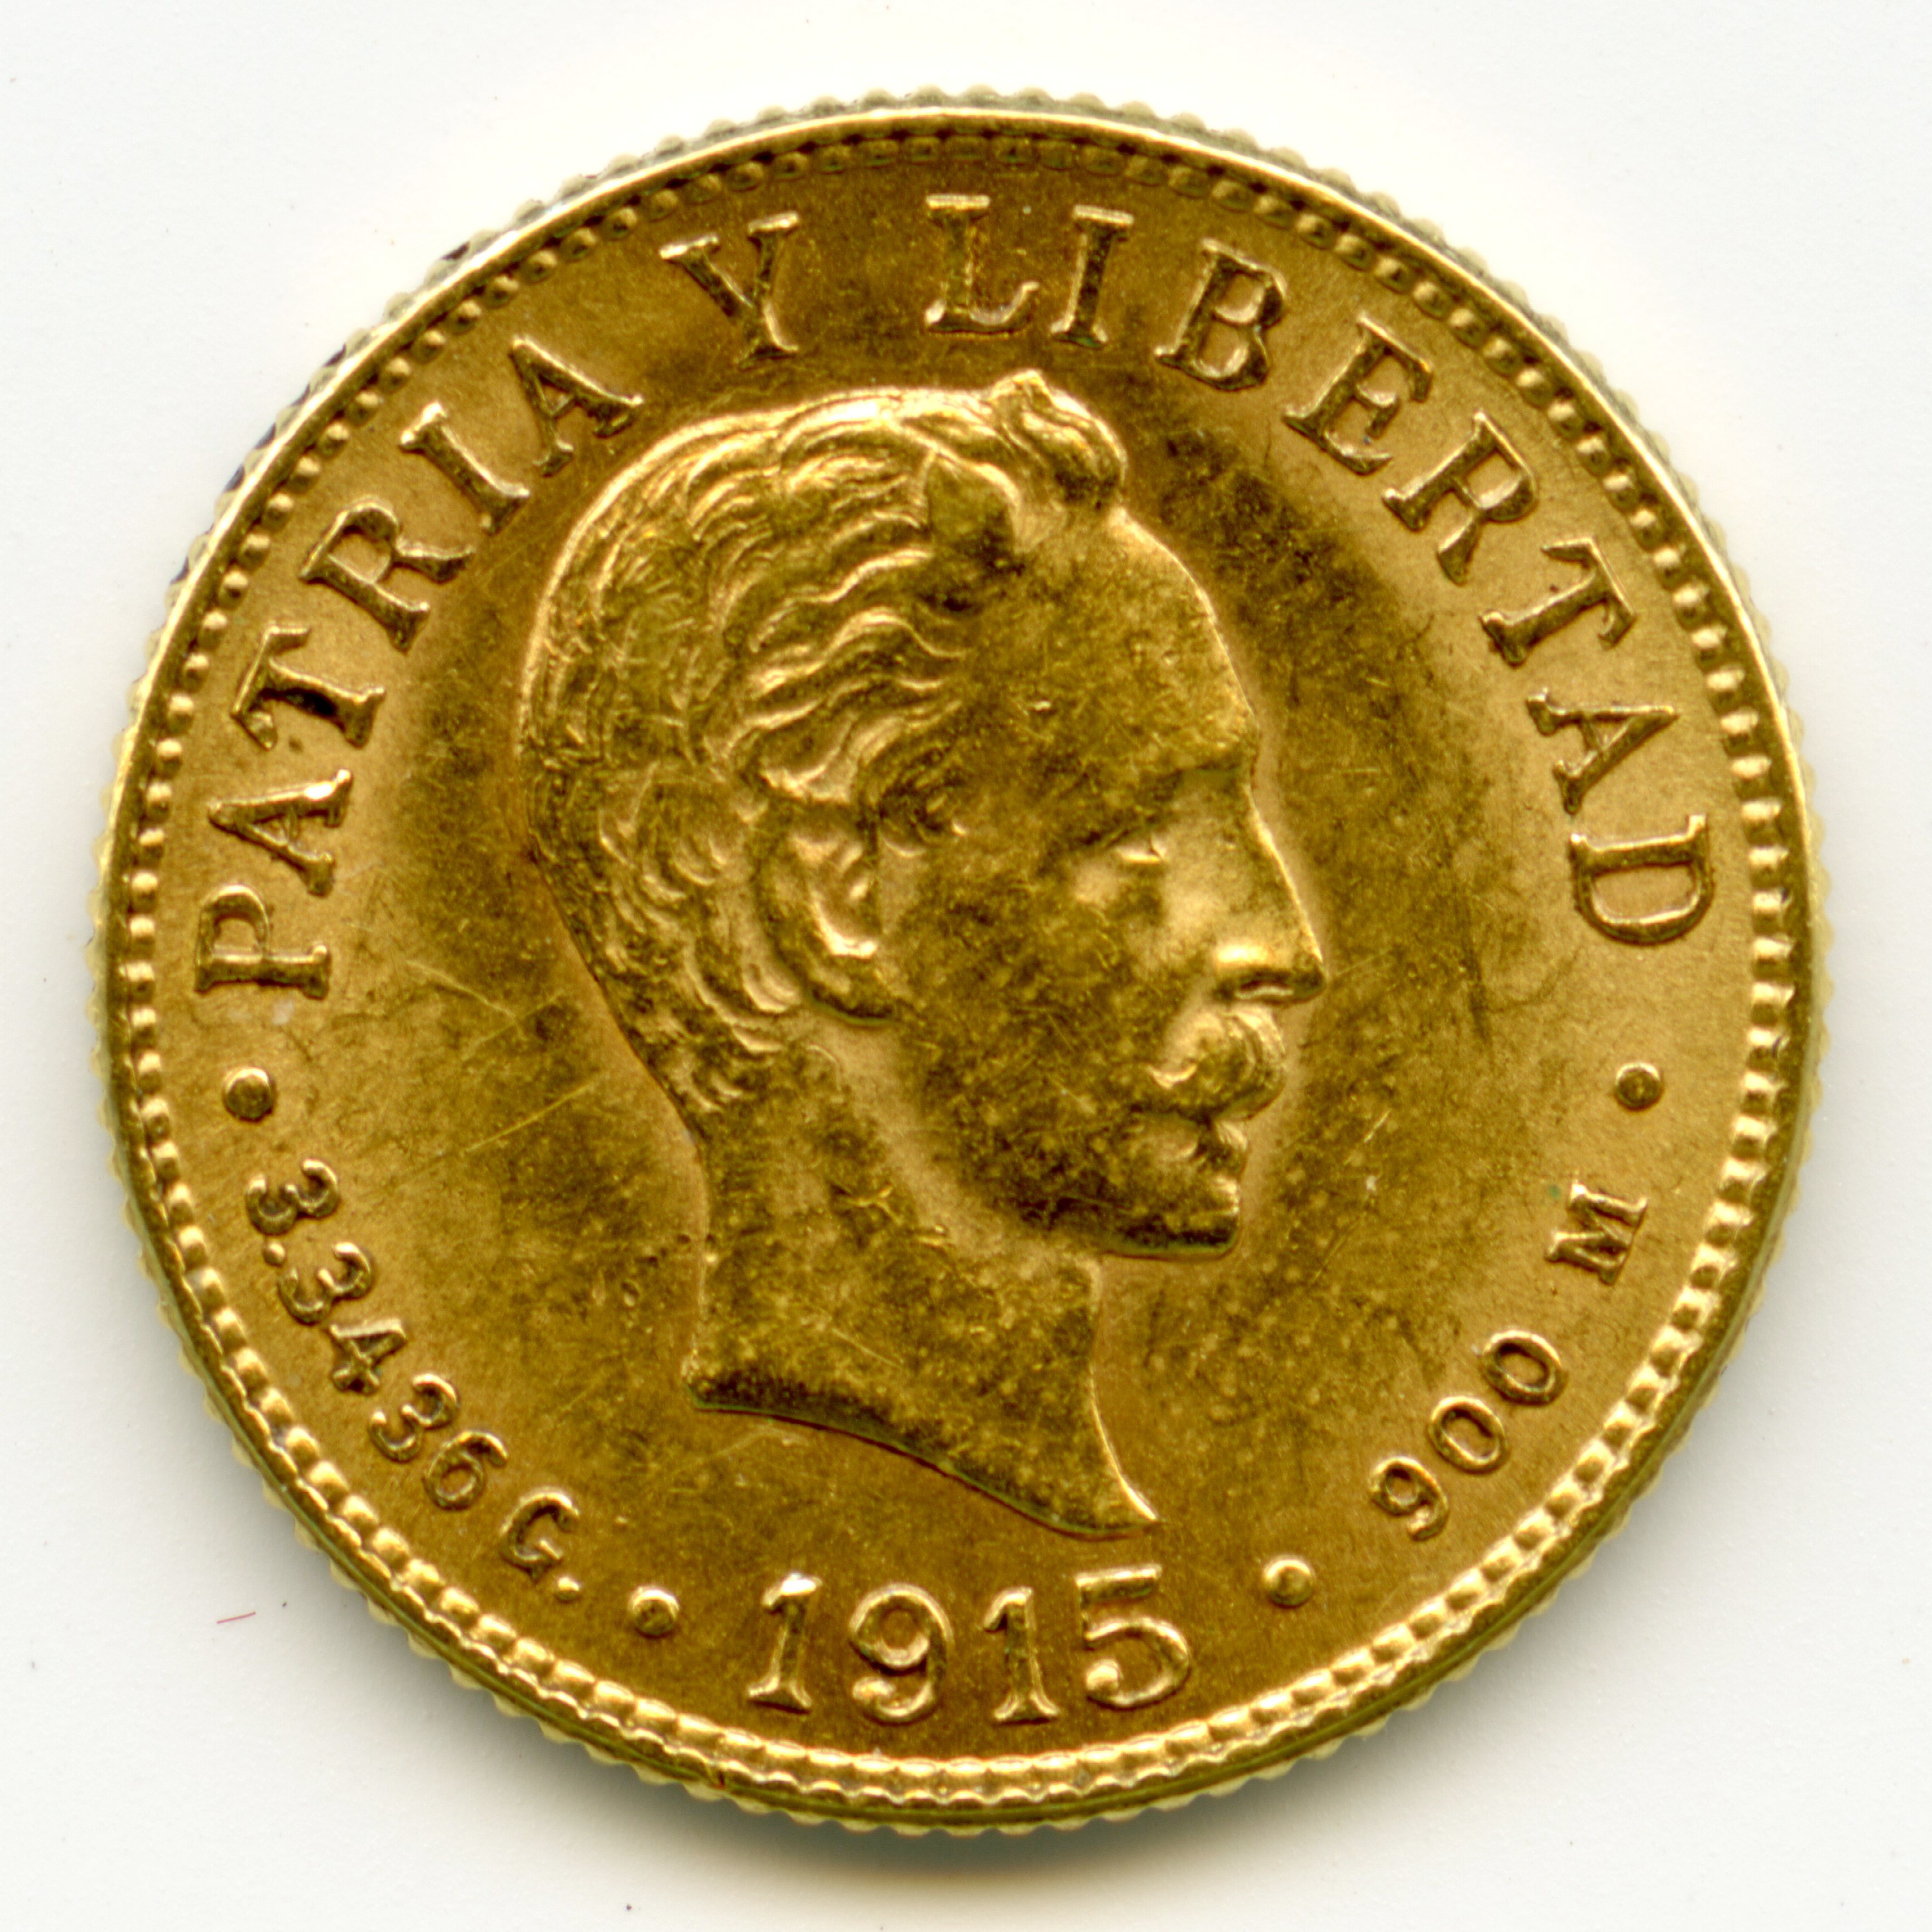 Cuba - 2 Pesos - 1915 avers